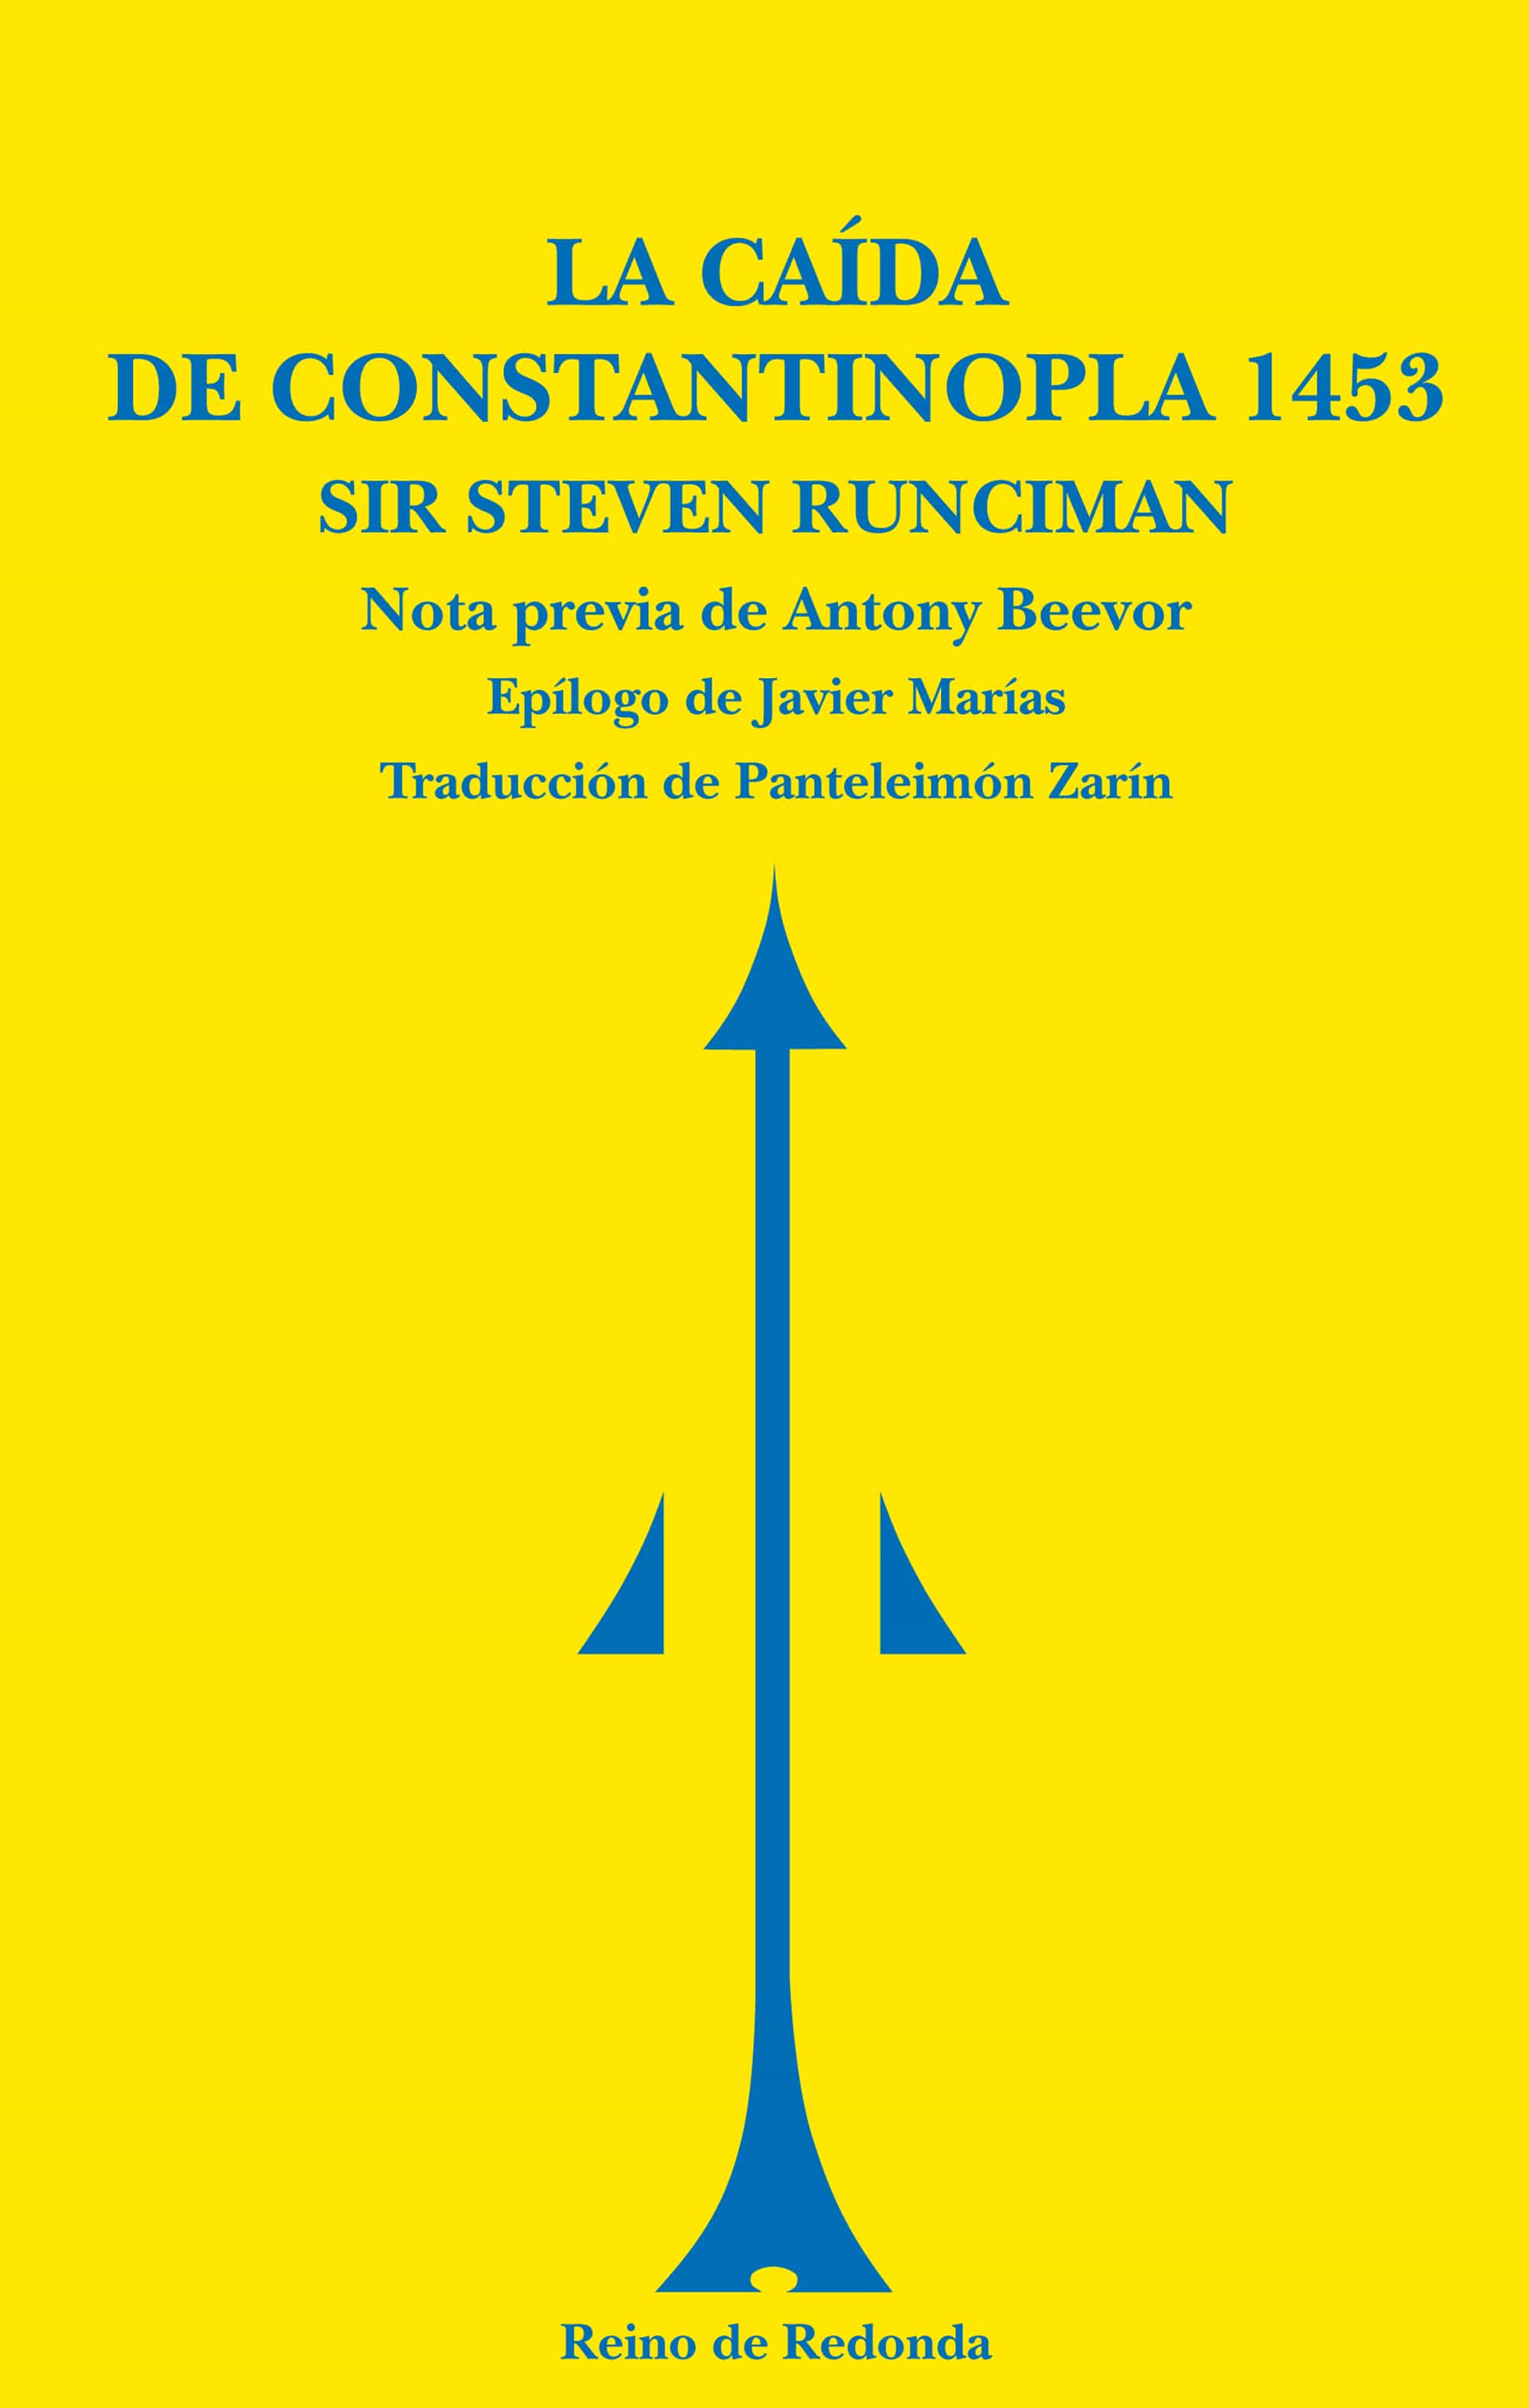 La Caida De Constantinopla Steven Runciman Comprar Libro 9788493365622